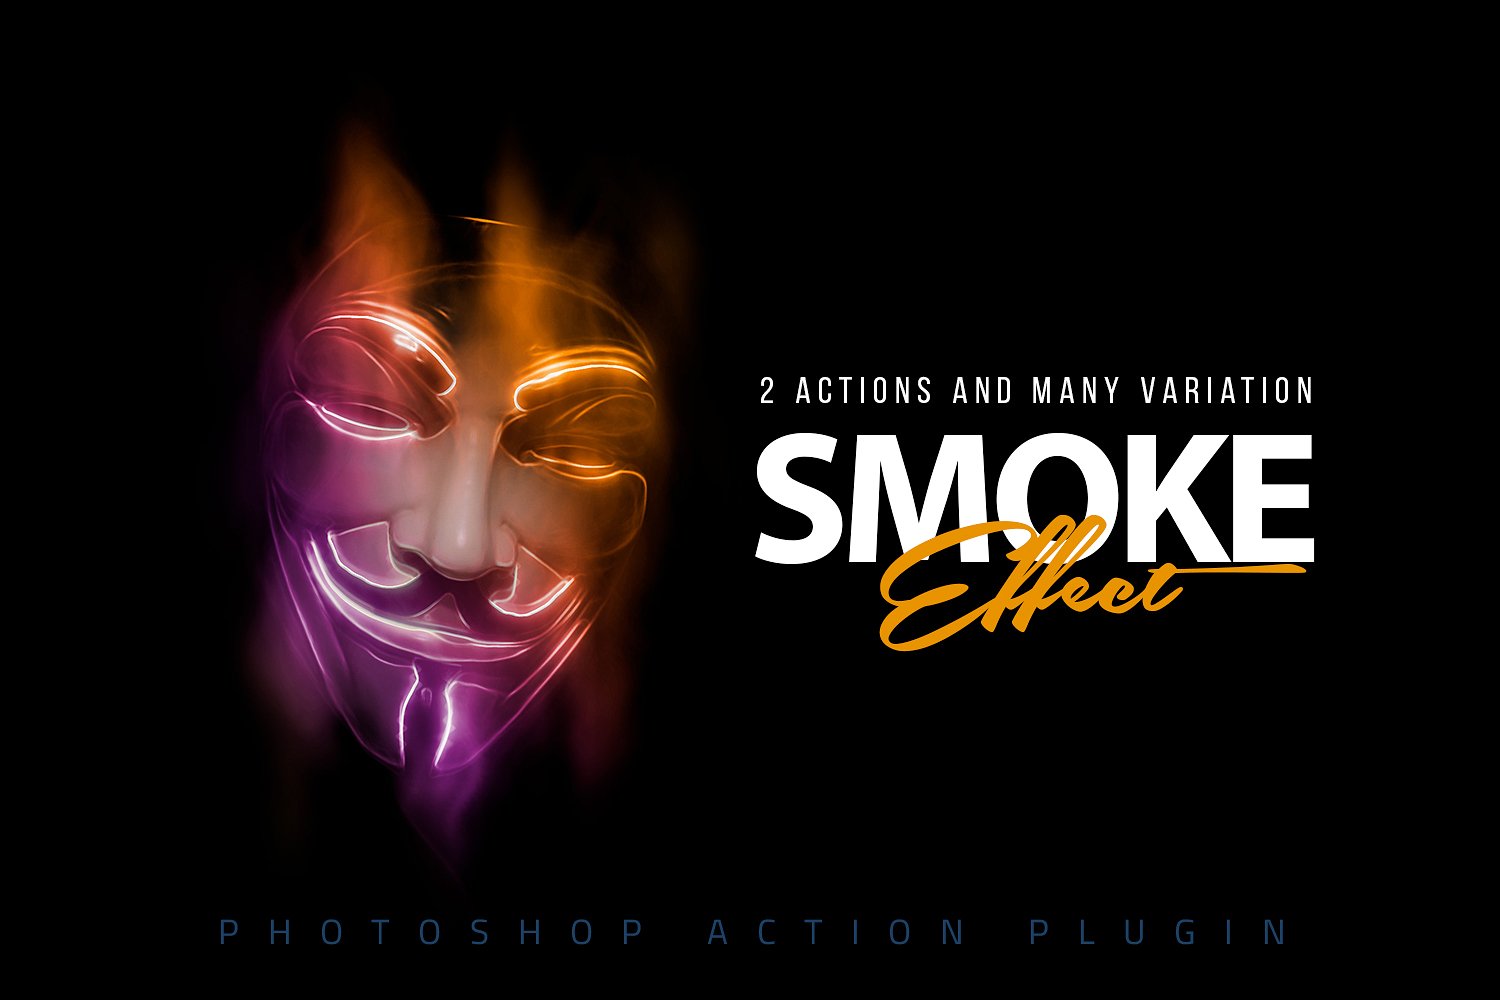 神秘的烟雾效应PS动作下载 Smoke Effect Photoshop Action [atn]插图